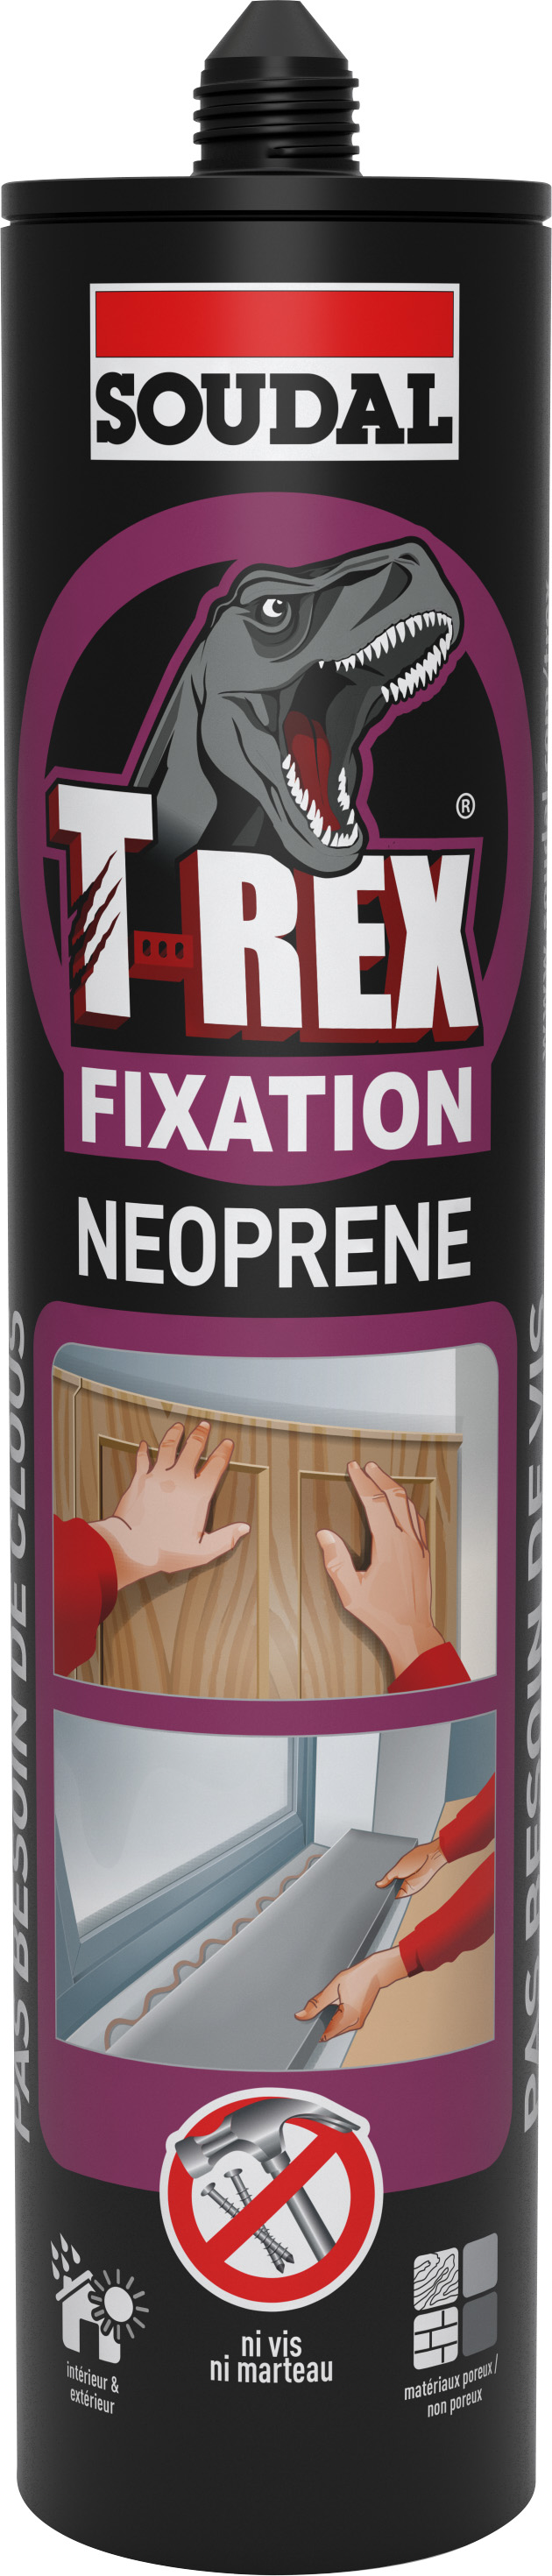 Colle fixation néoprène T-REX 390g - SOUDAL 